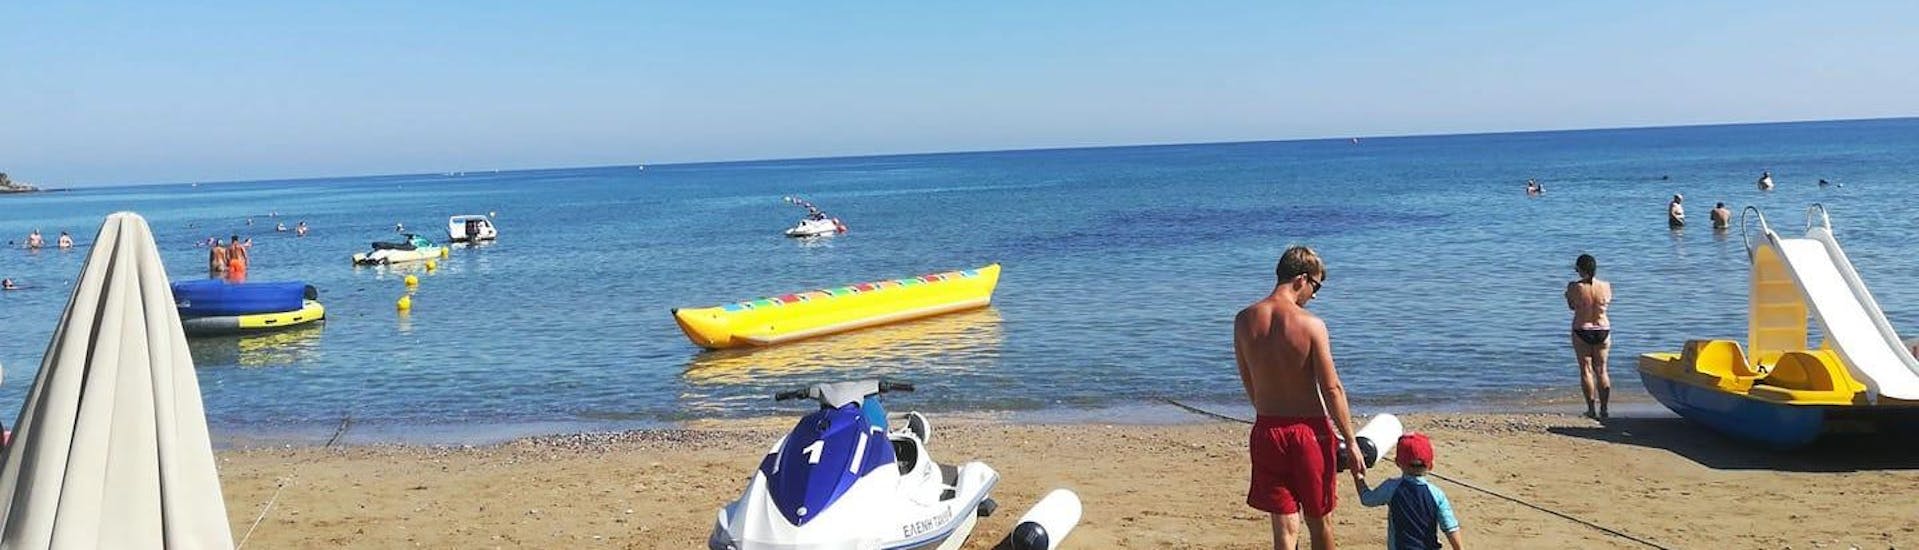 Playa de Stalida, donde Slalom Water Sports ofrece sus Jet Skis en Stalida en Creta.